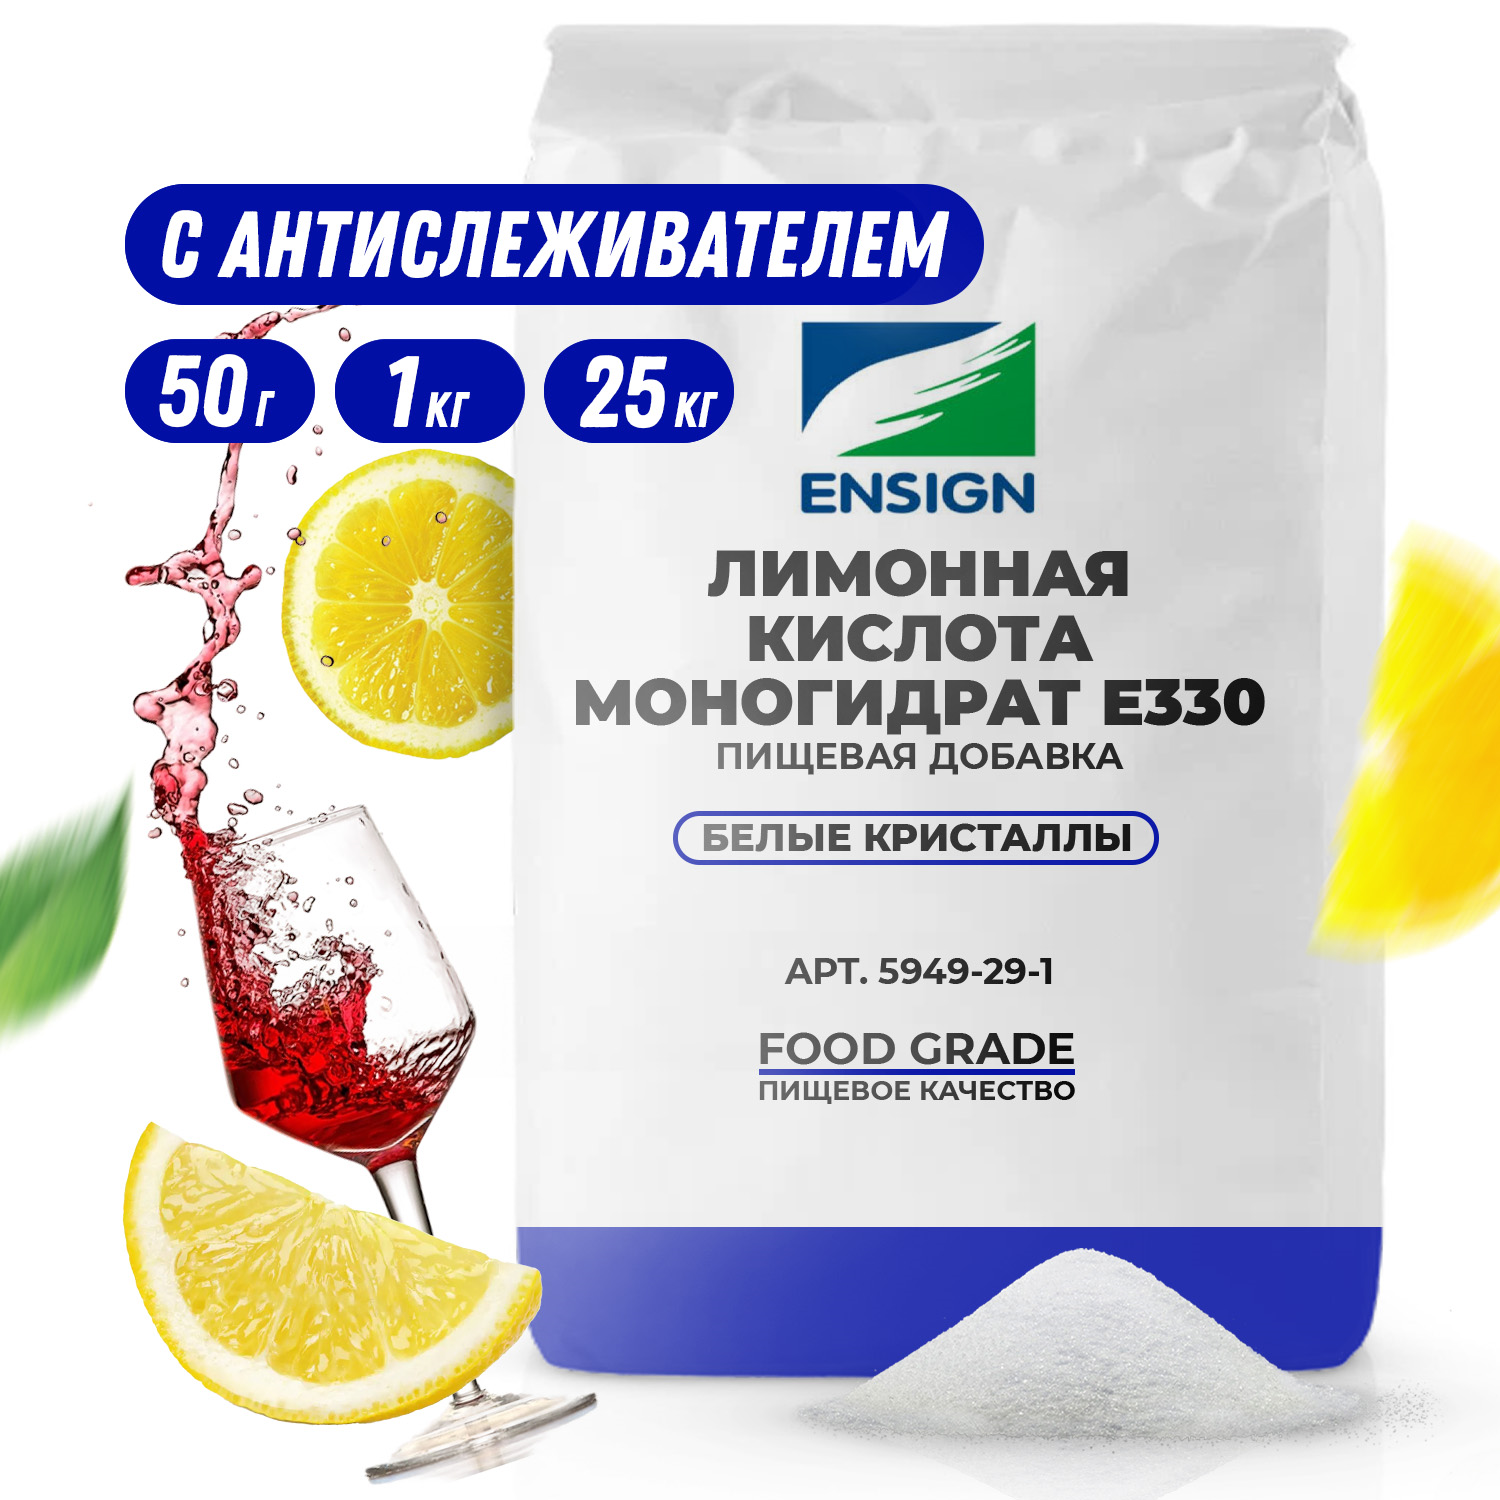 Лимонная кислота моногидрат Е330